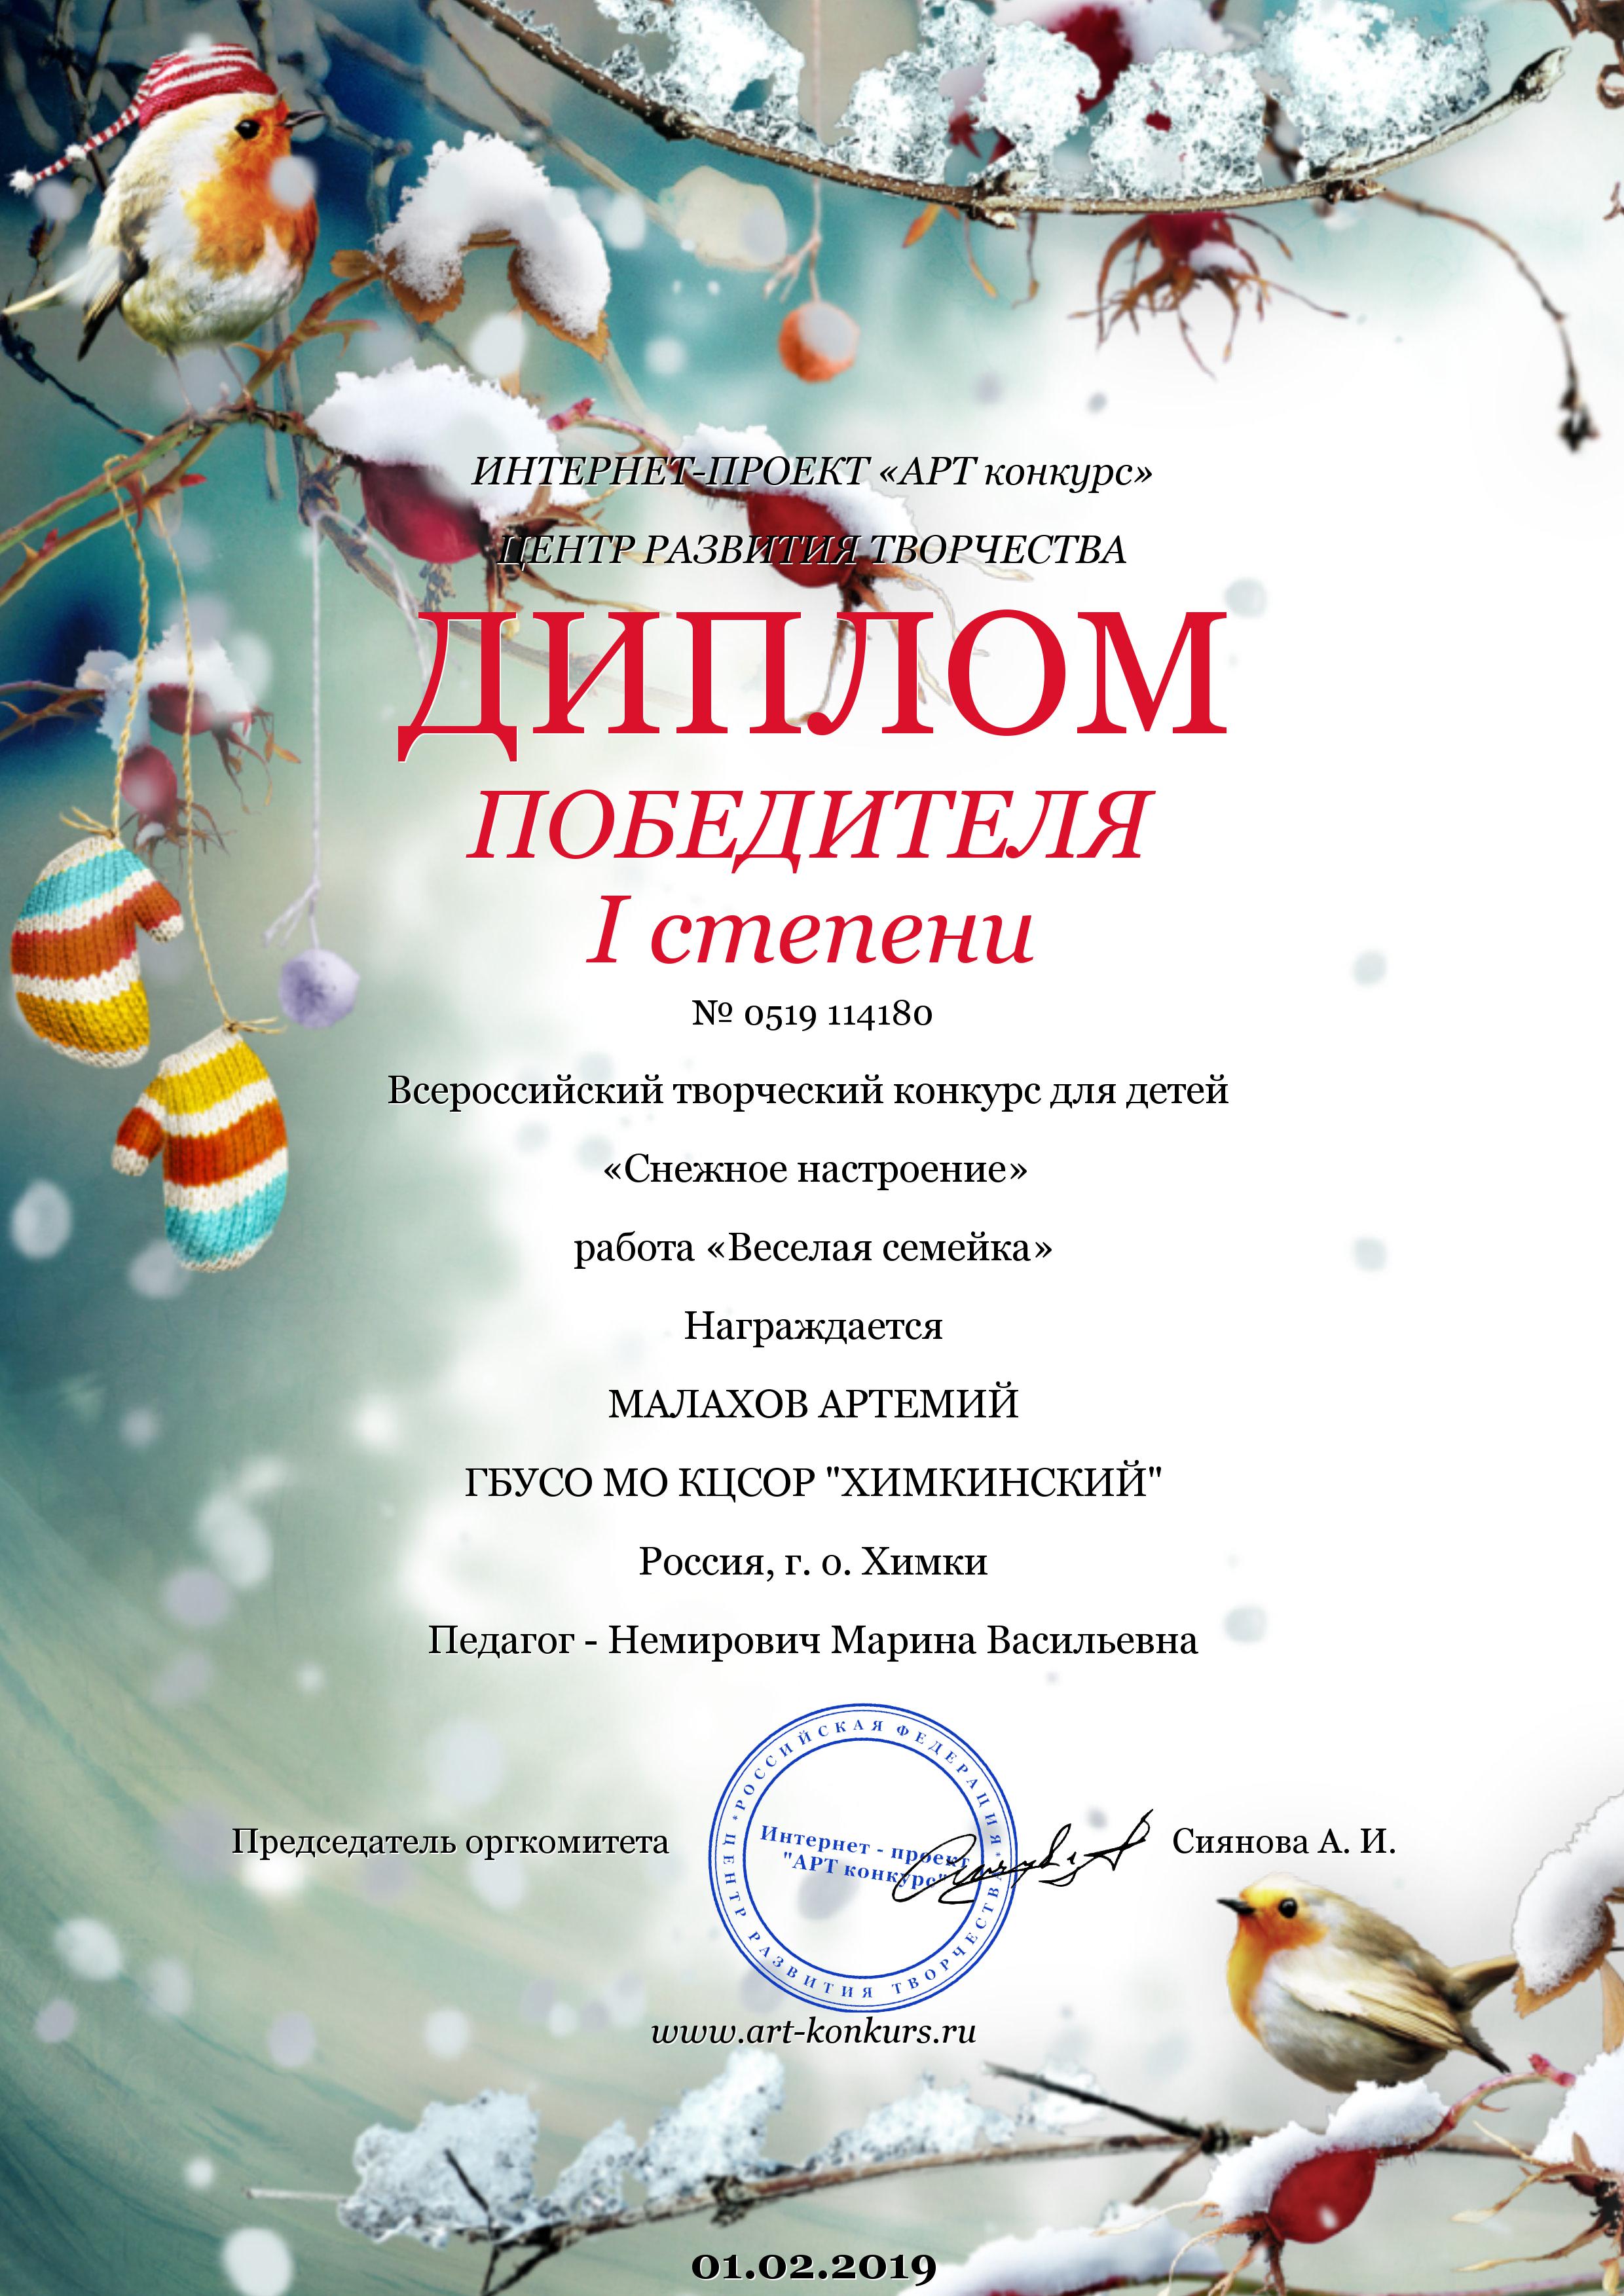 Диплом Победителя I степени за участие во Всероссийском творческом конкурсе для детей  "Снежное настроение"